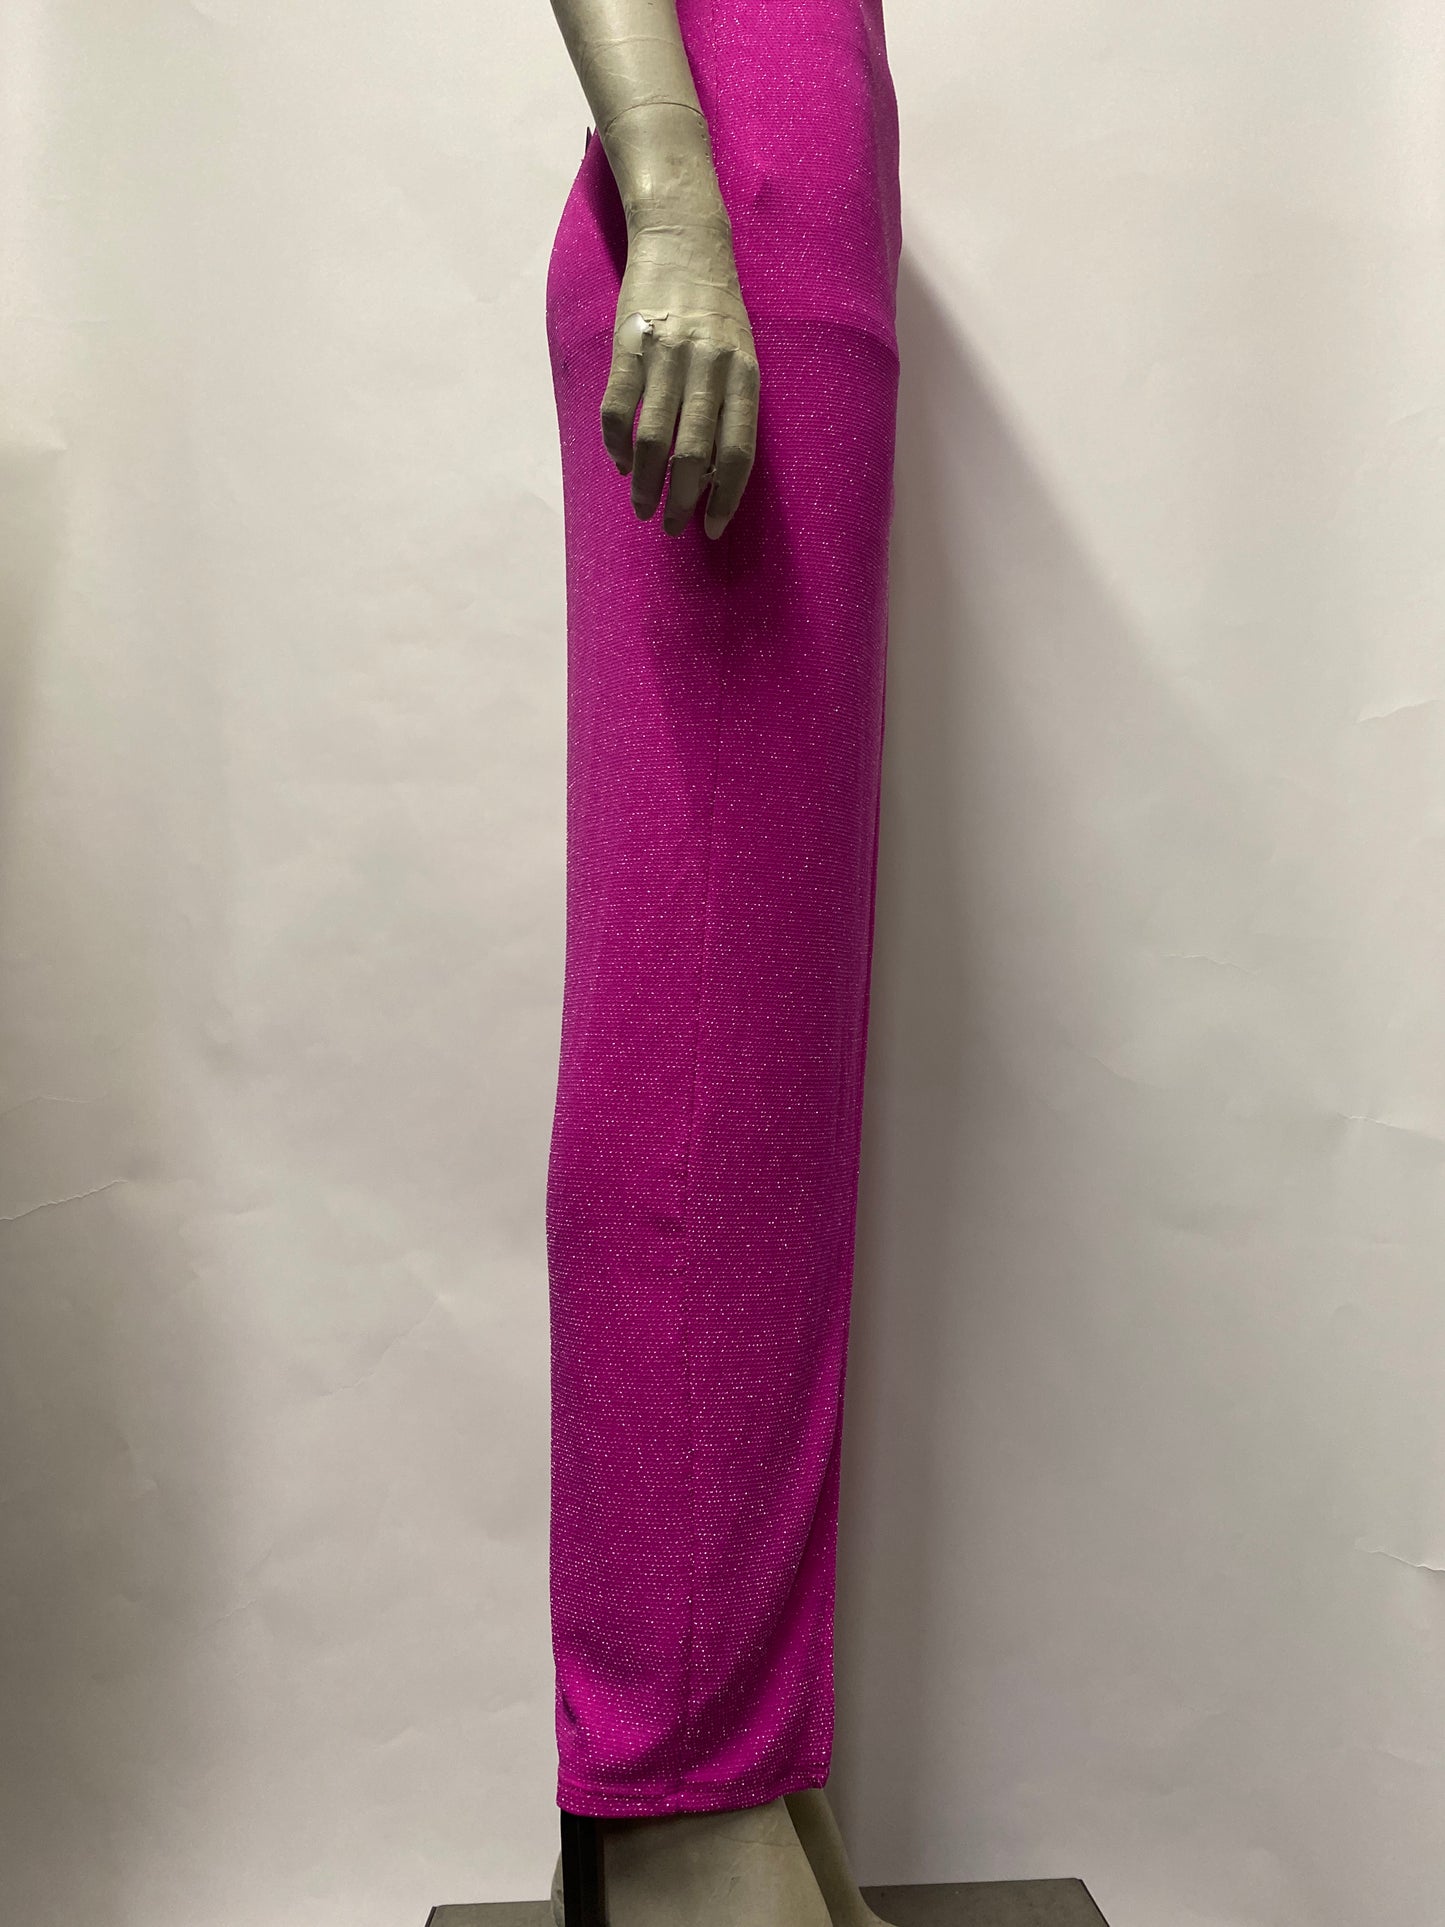 NBD at Revolve Pink Glitter Spaghetti Strap Ruched Midi Dress Extra Small BNWT